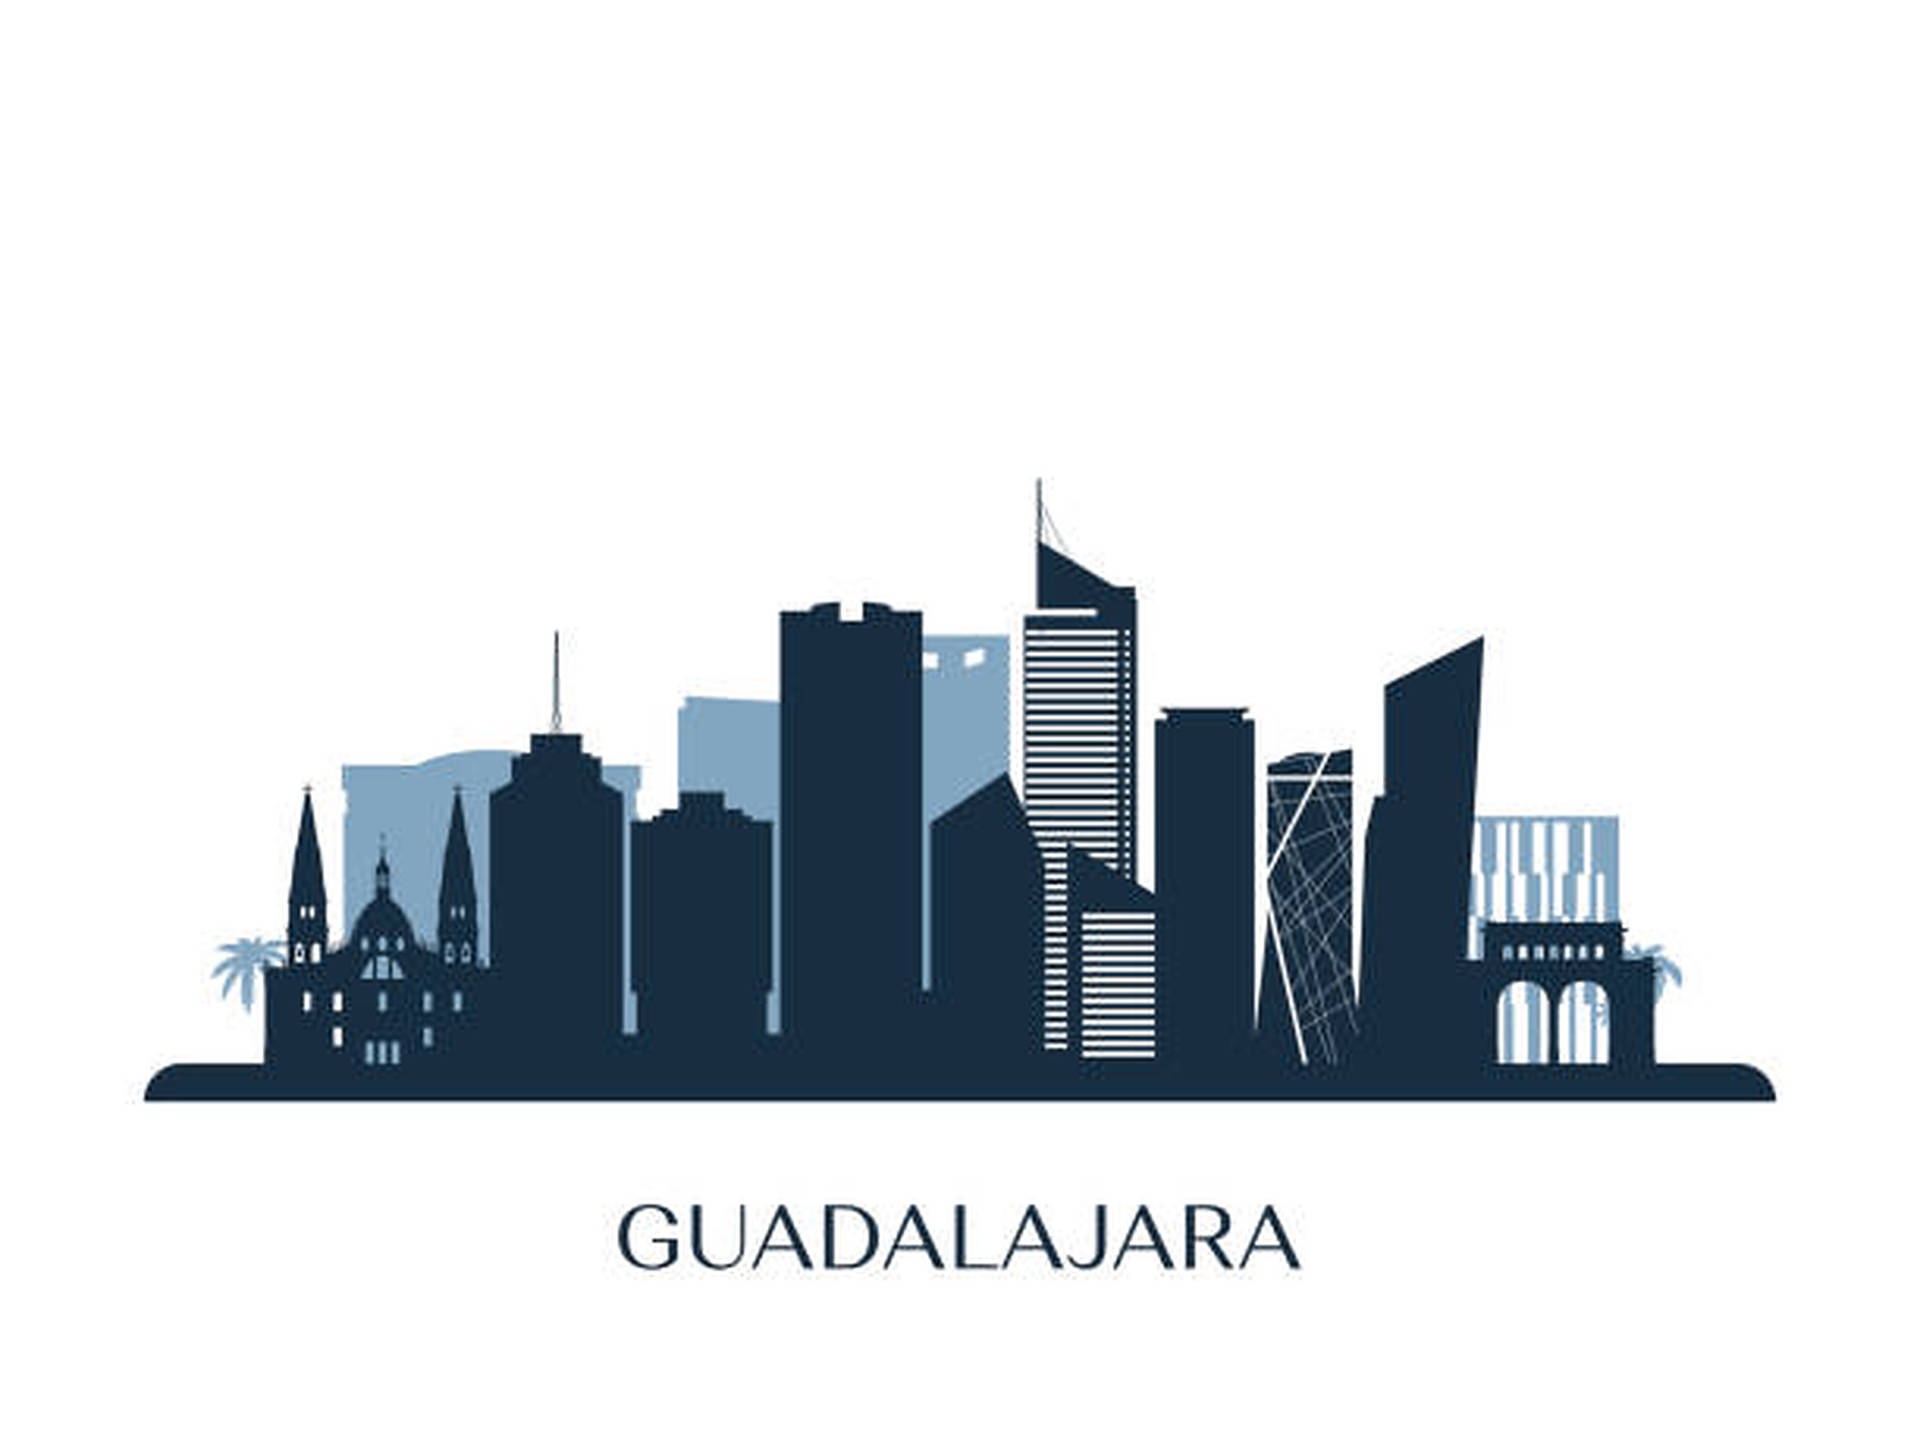 Guadalajara Monochromatic Silhouette Background